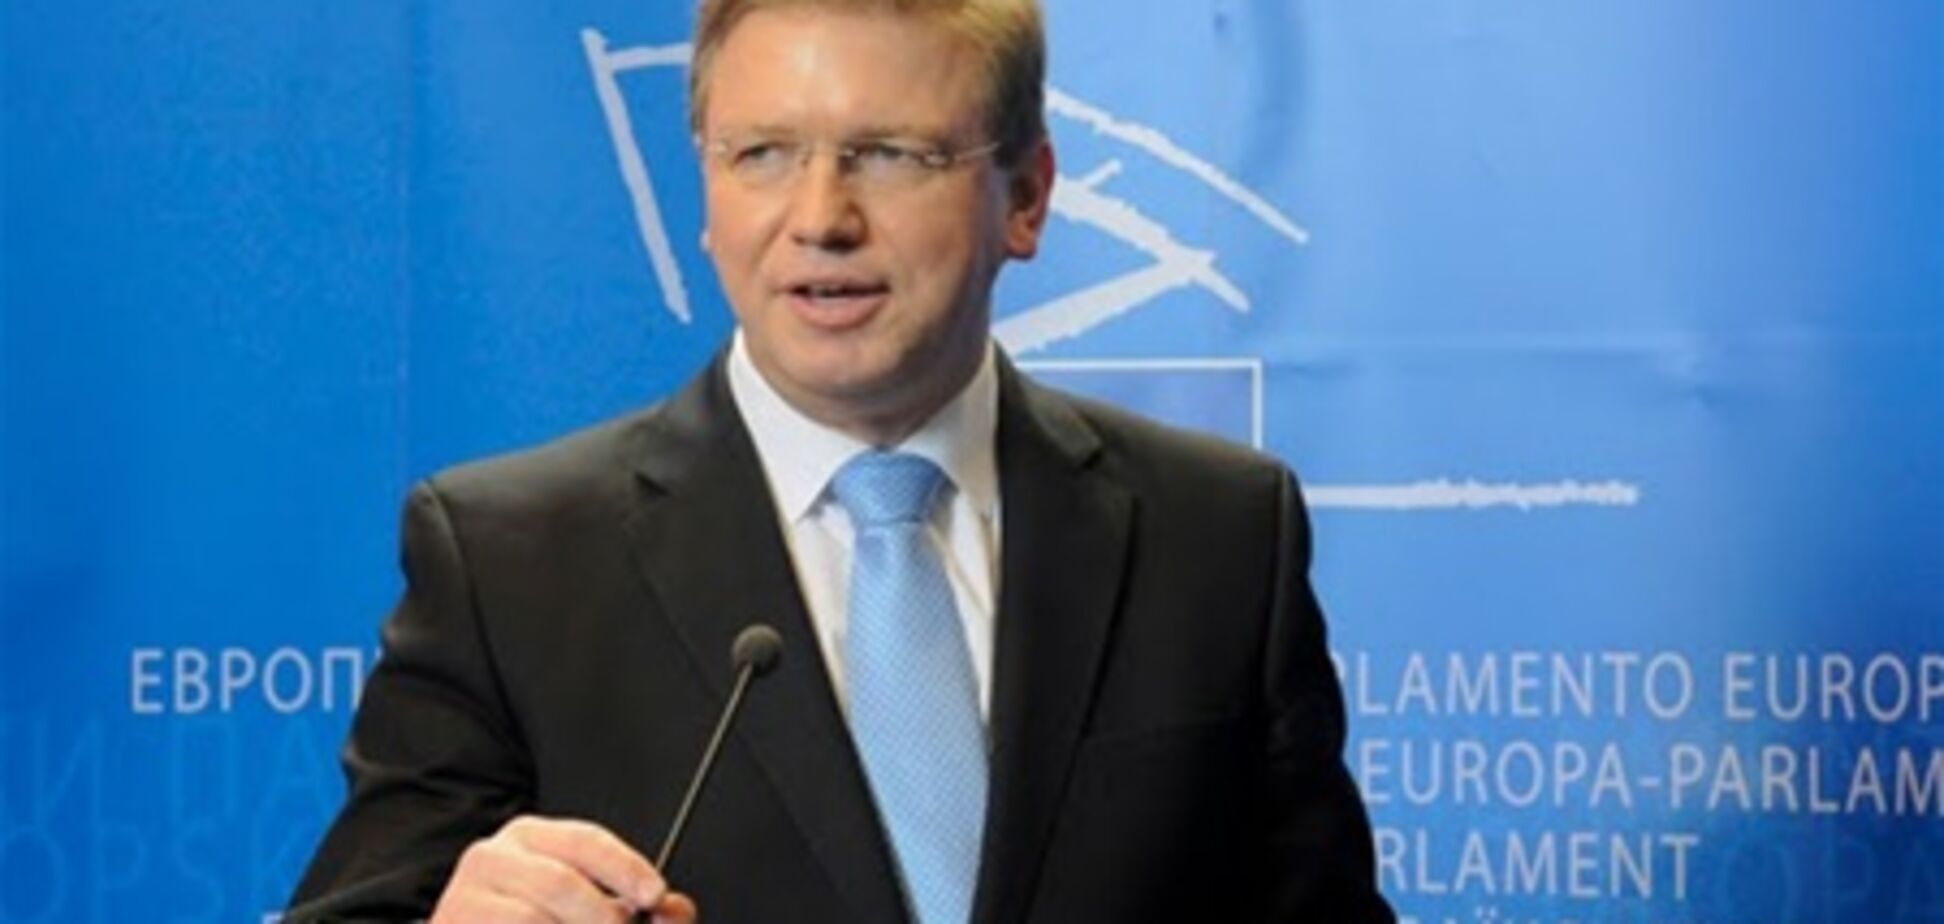 ЄС занепокоєний недостатнім просуванням реформ в Україні - Фюле